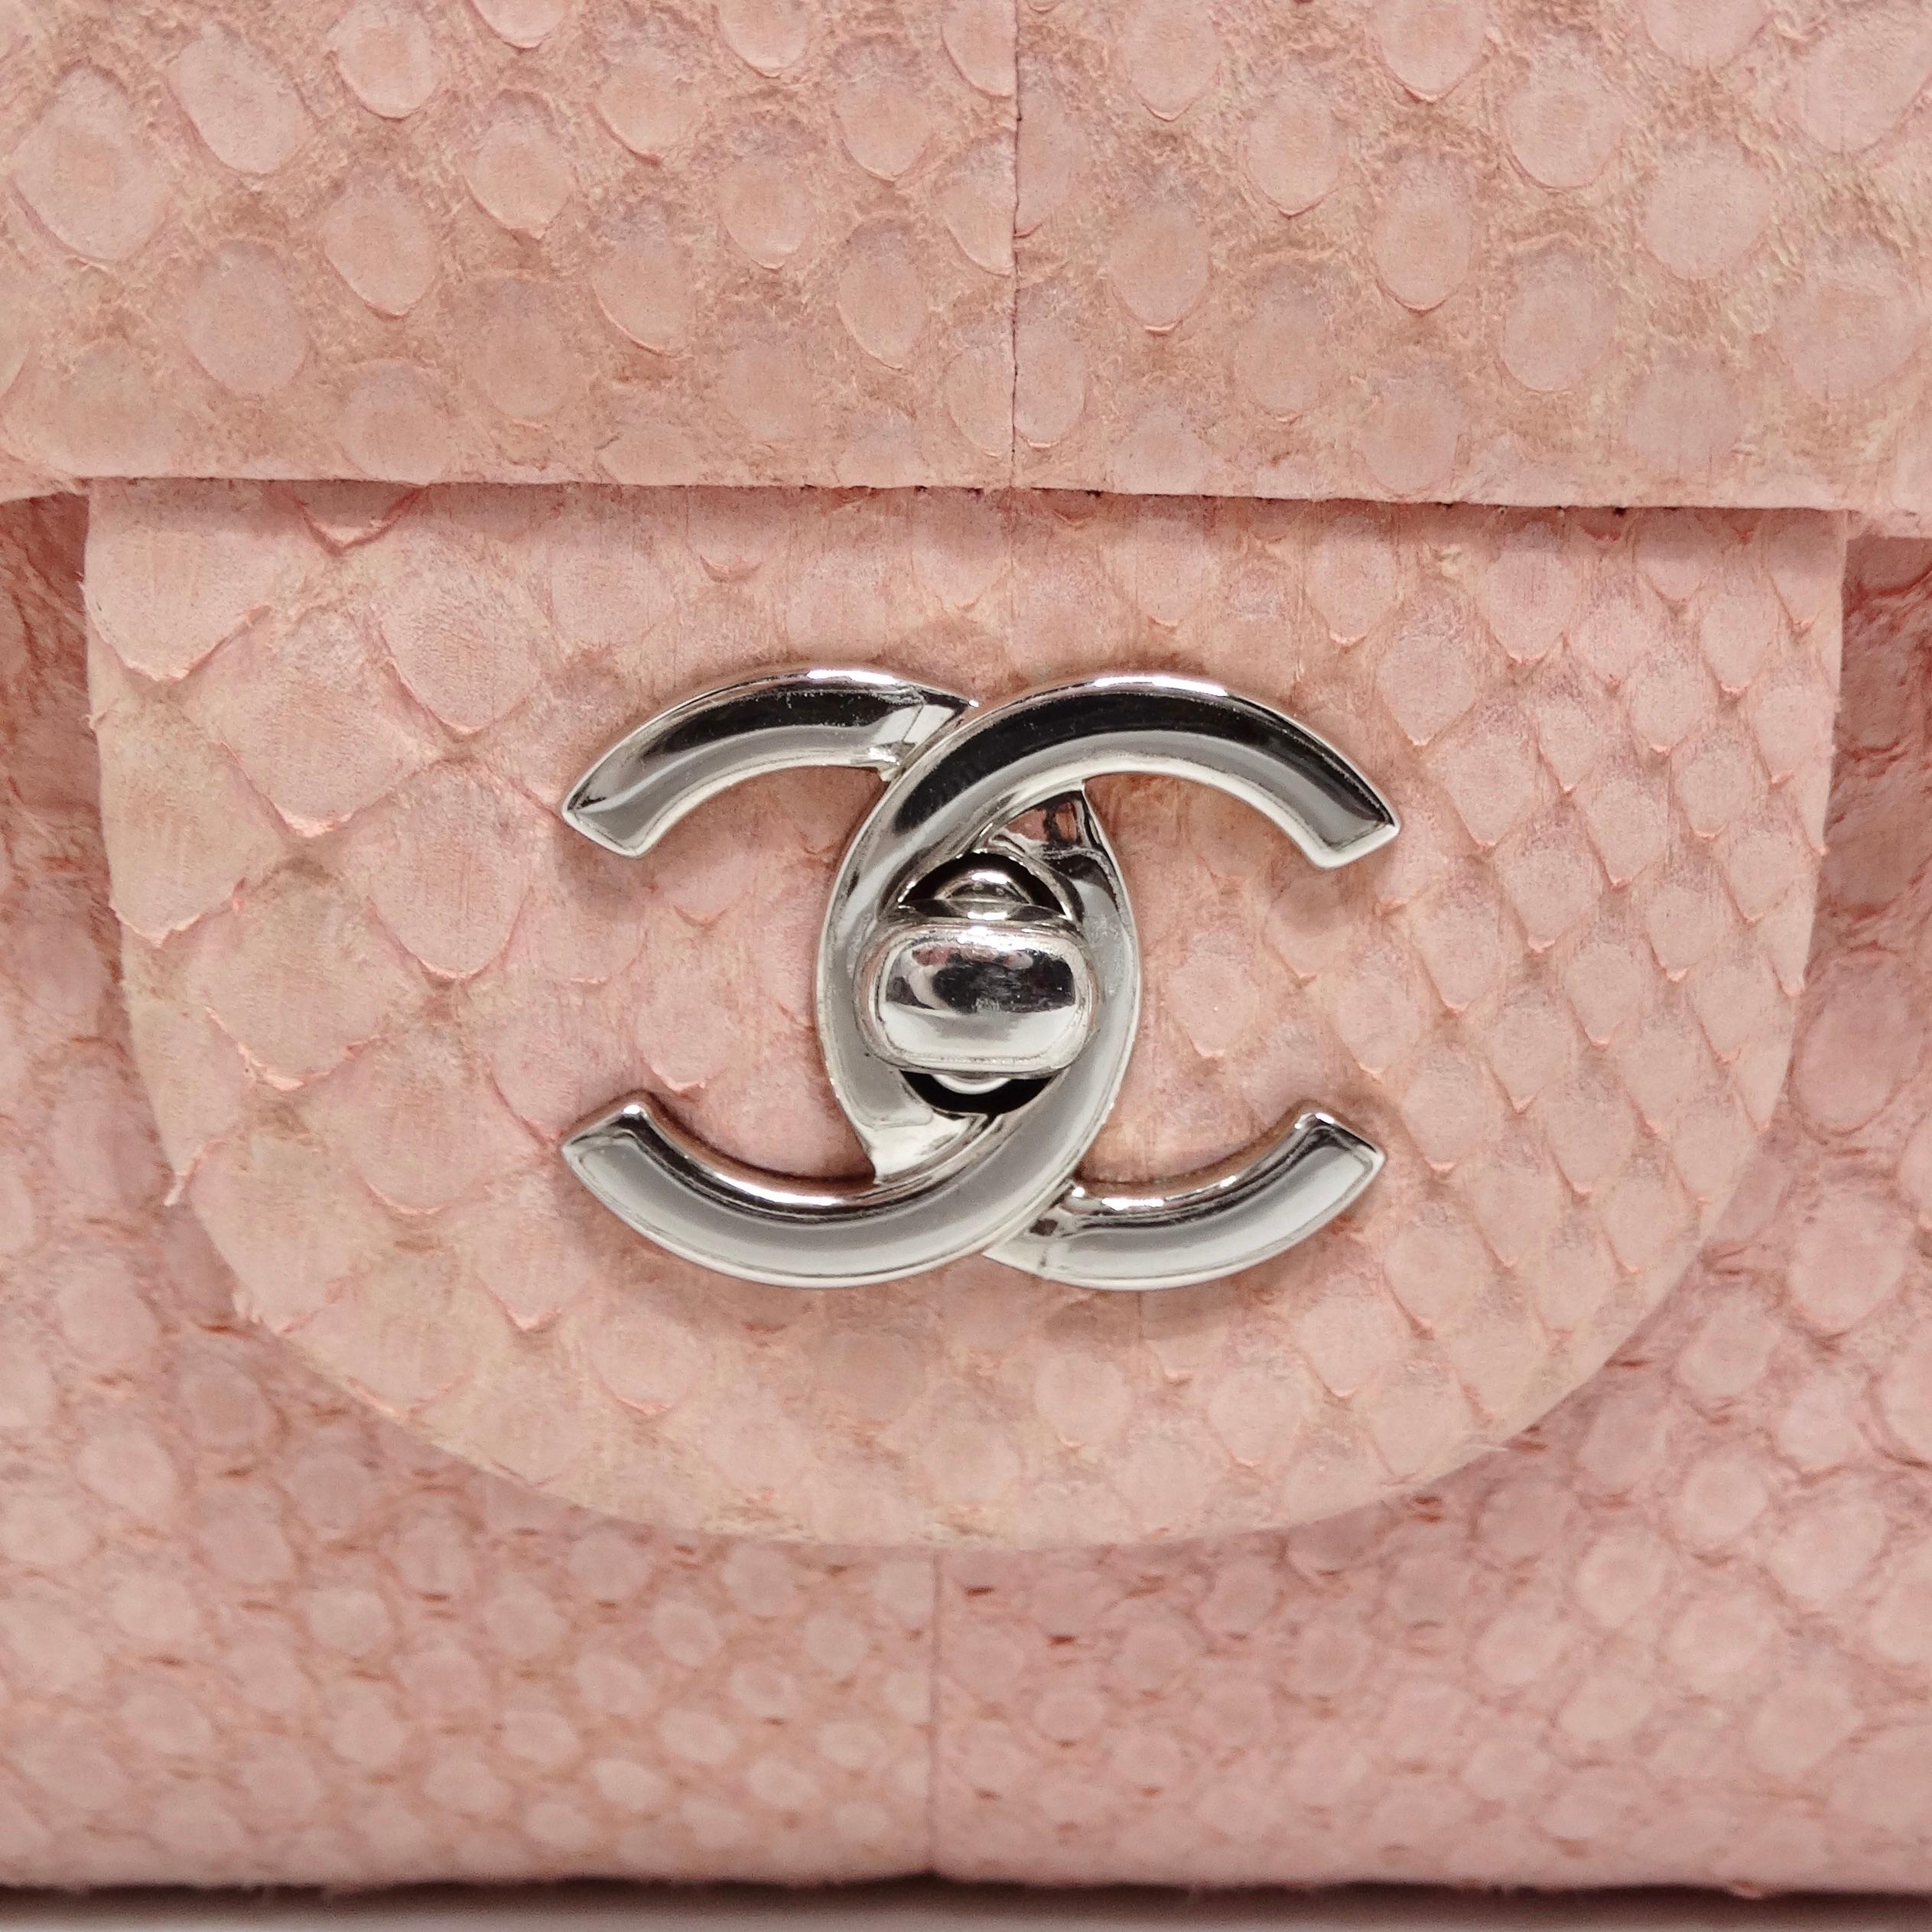 Voici le rêve d'un collectionneur : le sac classique à double rabat Jumbo en python rose de Chanel. Cette œuvre d'art exquise n'est plus produite, ce qui en fait une pièce très recherchée et incroyablement rare. Confectionné en véritable peau de